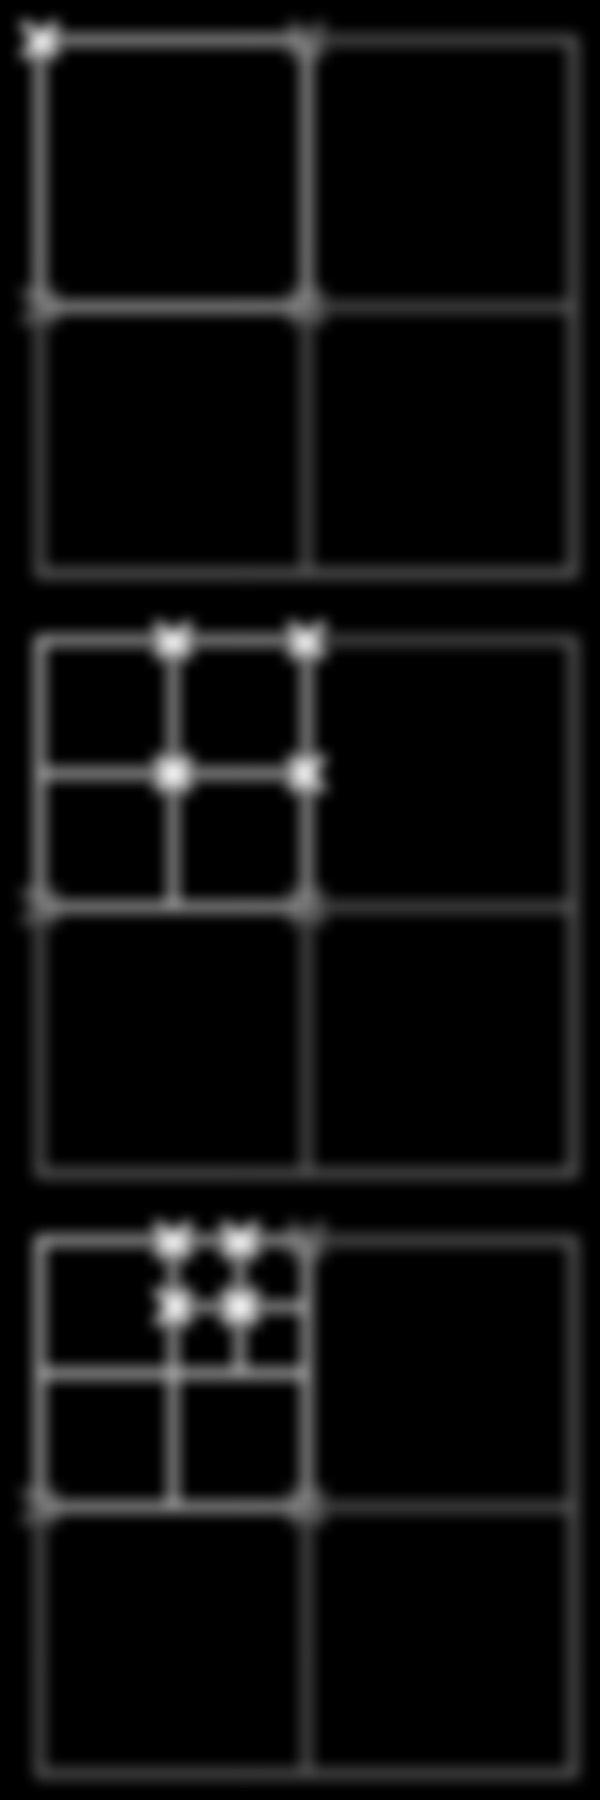 1 näyte pikseliä kohden. Mental ray määrittelee pikselin väriarvot sample blockin kulmapisteistä, hyödyntäen viereisten pikseleiden arvoja.